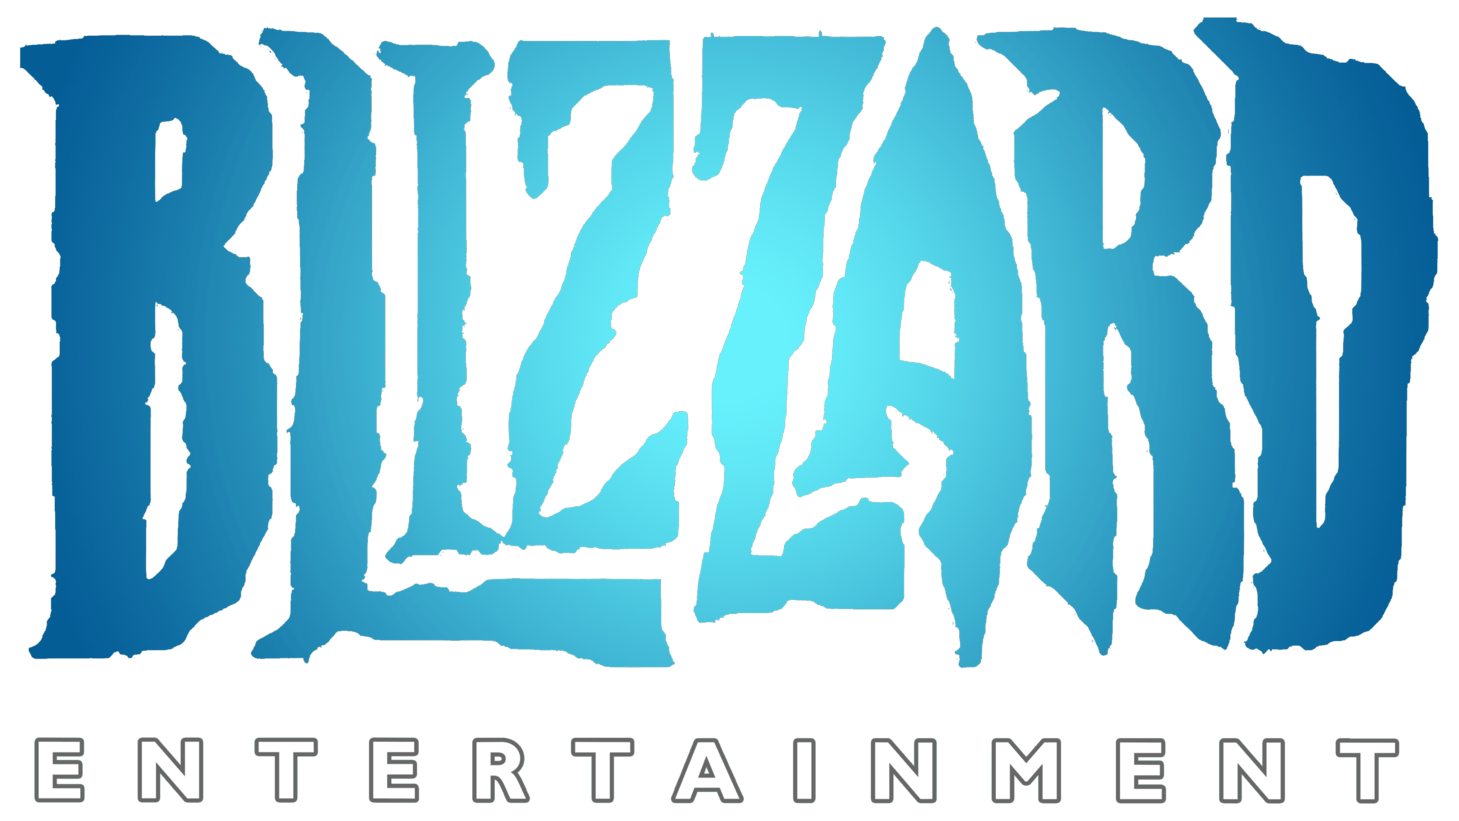 Blizzard entertainment sign 2010